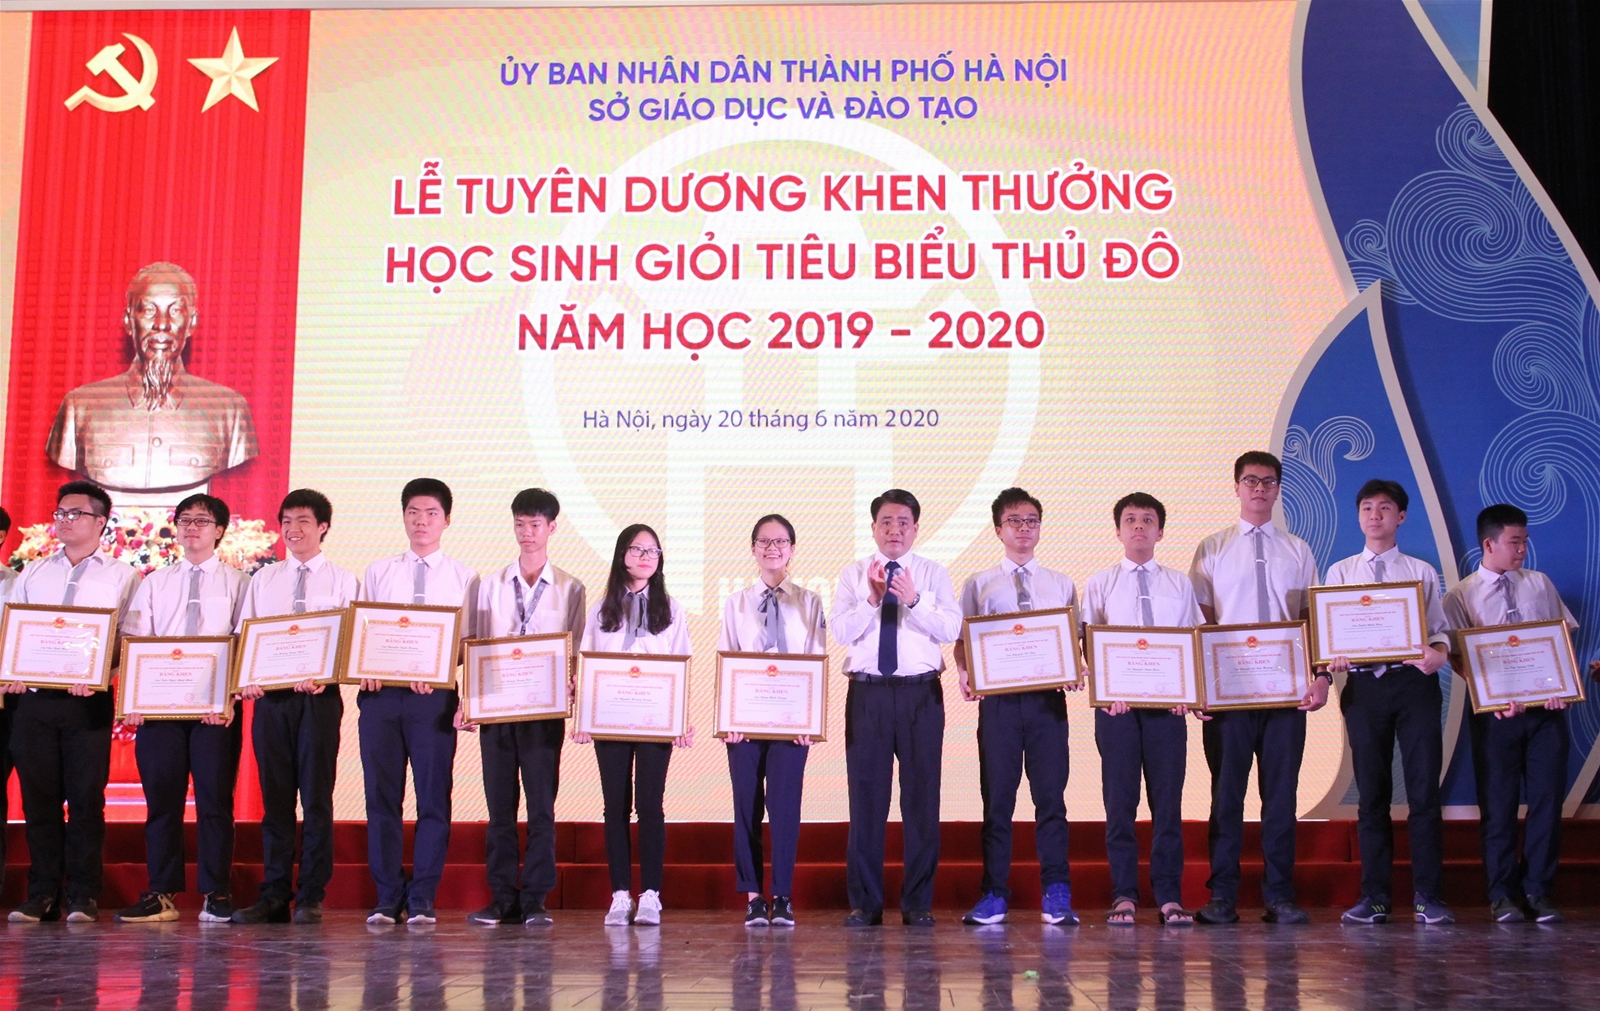 Chủ tịch UBND TP Nguyễn Đức Chung và Trưởng ban Tuyên giáo Thành ủy Nguyễn Văn Phong trao Bằng khen của UBND TP Hà Nội cho 26 học sinh THPT đoạt giải quốc tế.